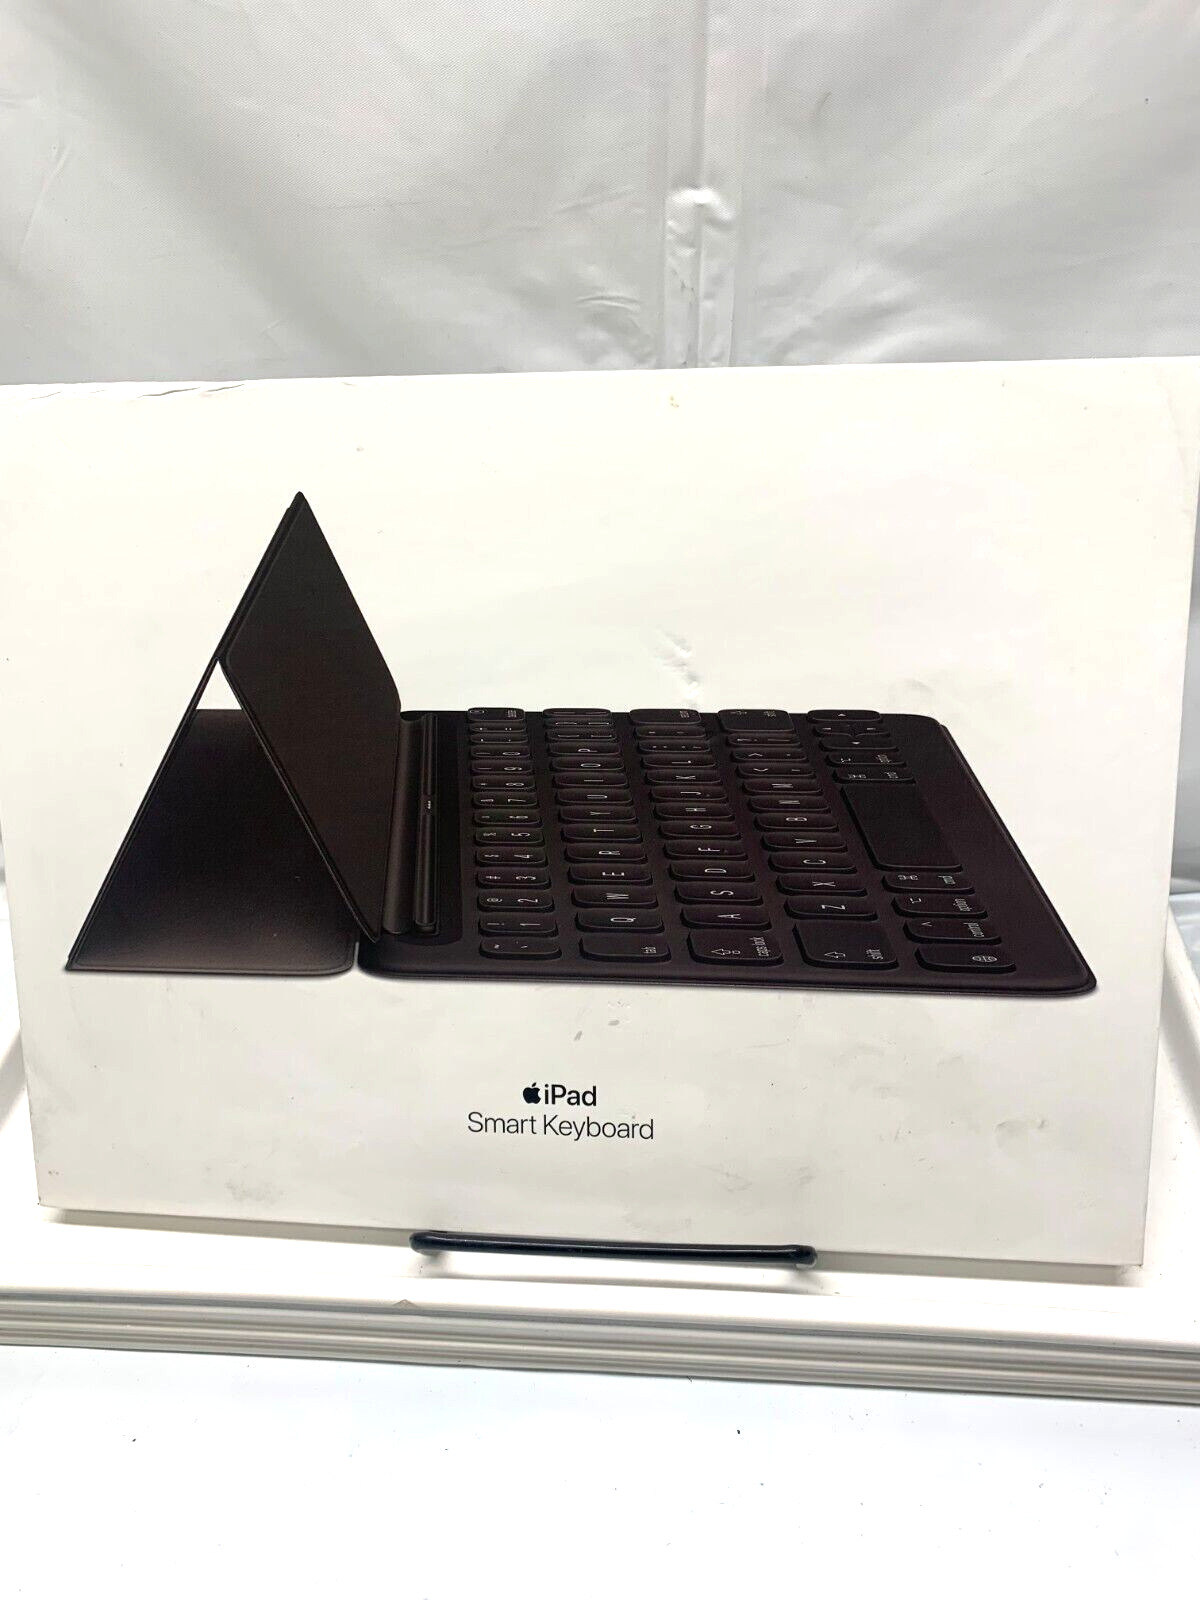 Apple iPad Smart Keyboard - Black (MX3L2LL/A)*New-Box Damage-Not Sealed*